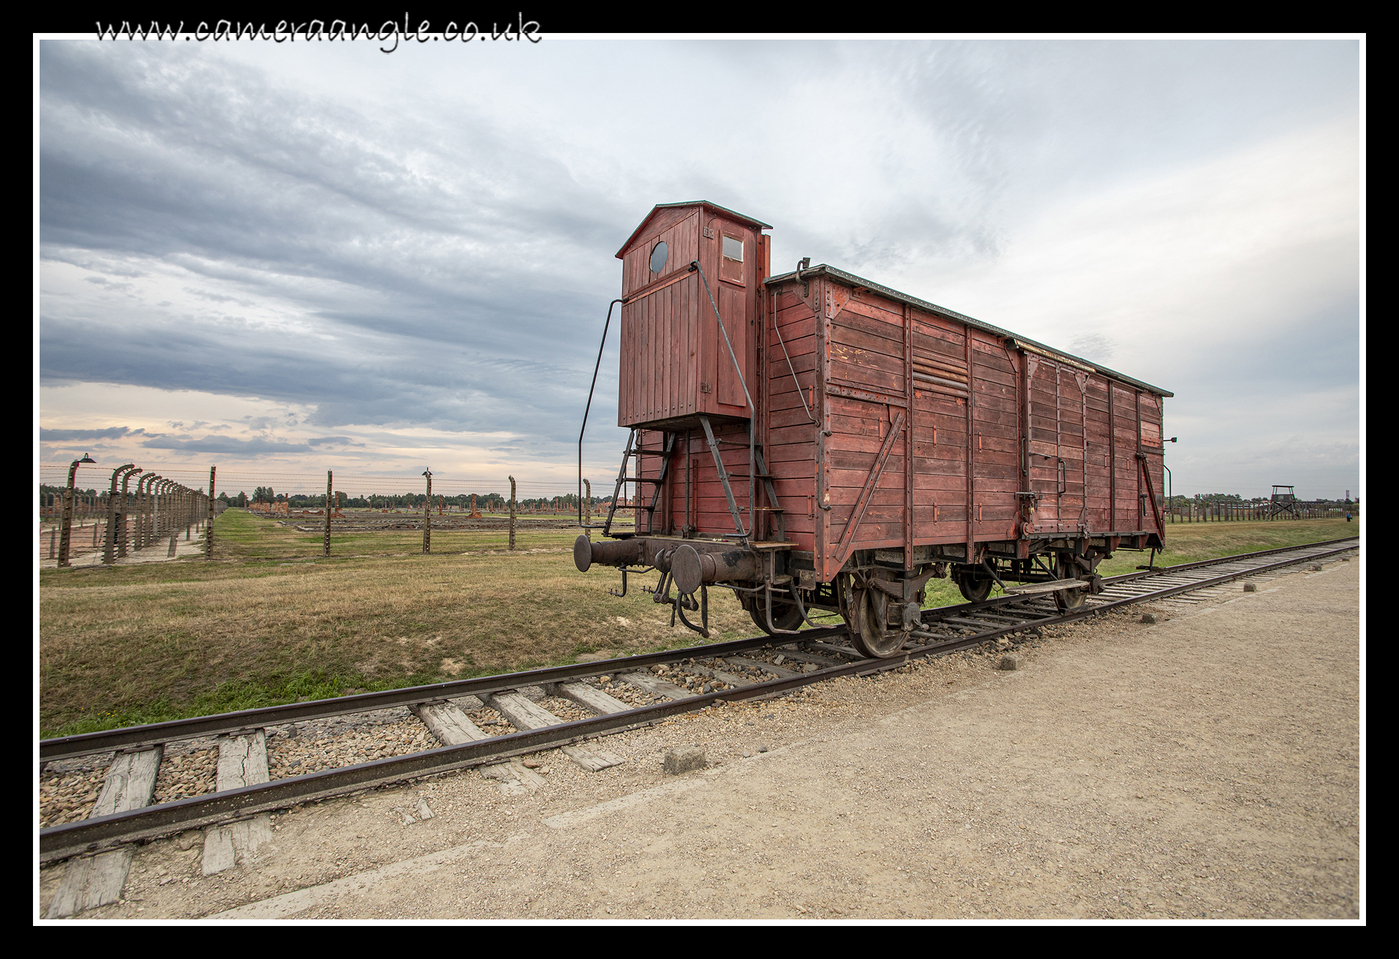 Birkenau Train Car
Keywords: Birkenau Train Car 2019 Krakow